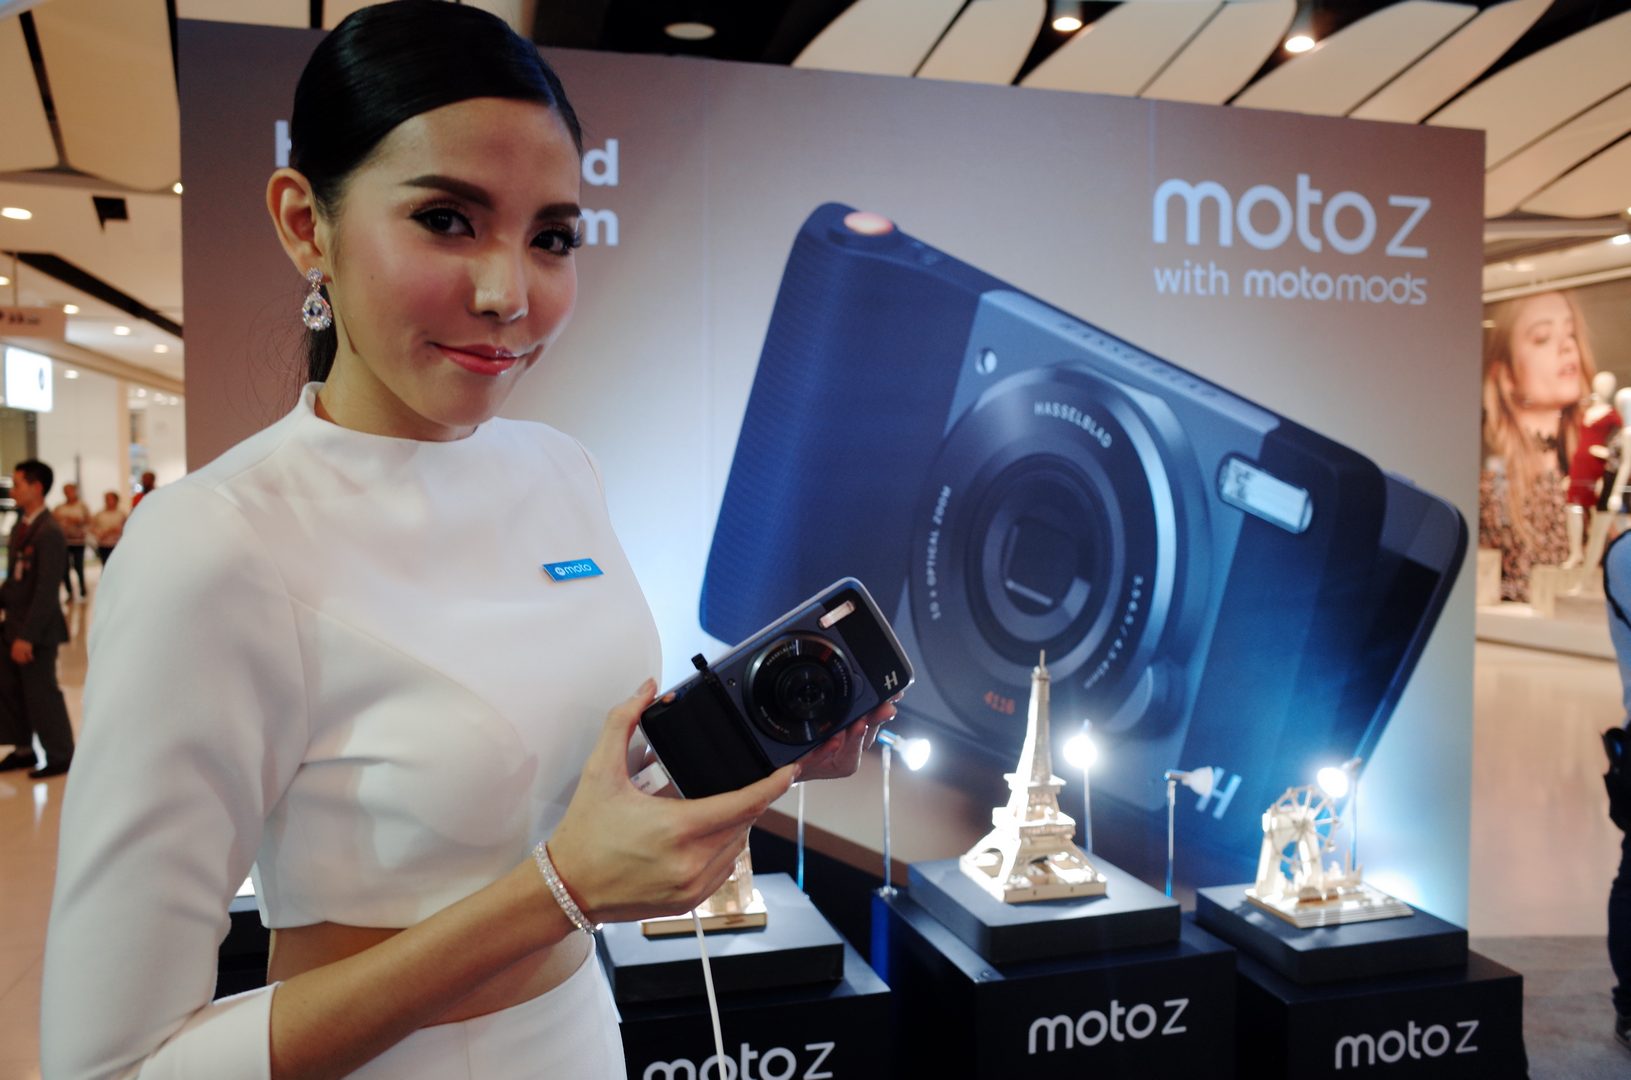 เปิดตัว Moto Z พร้อมอุปกรณ์เสริม Moto Mods อย่างเป็นทางการในไทย